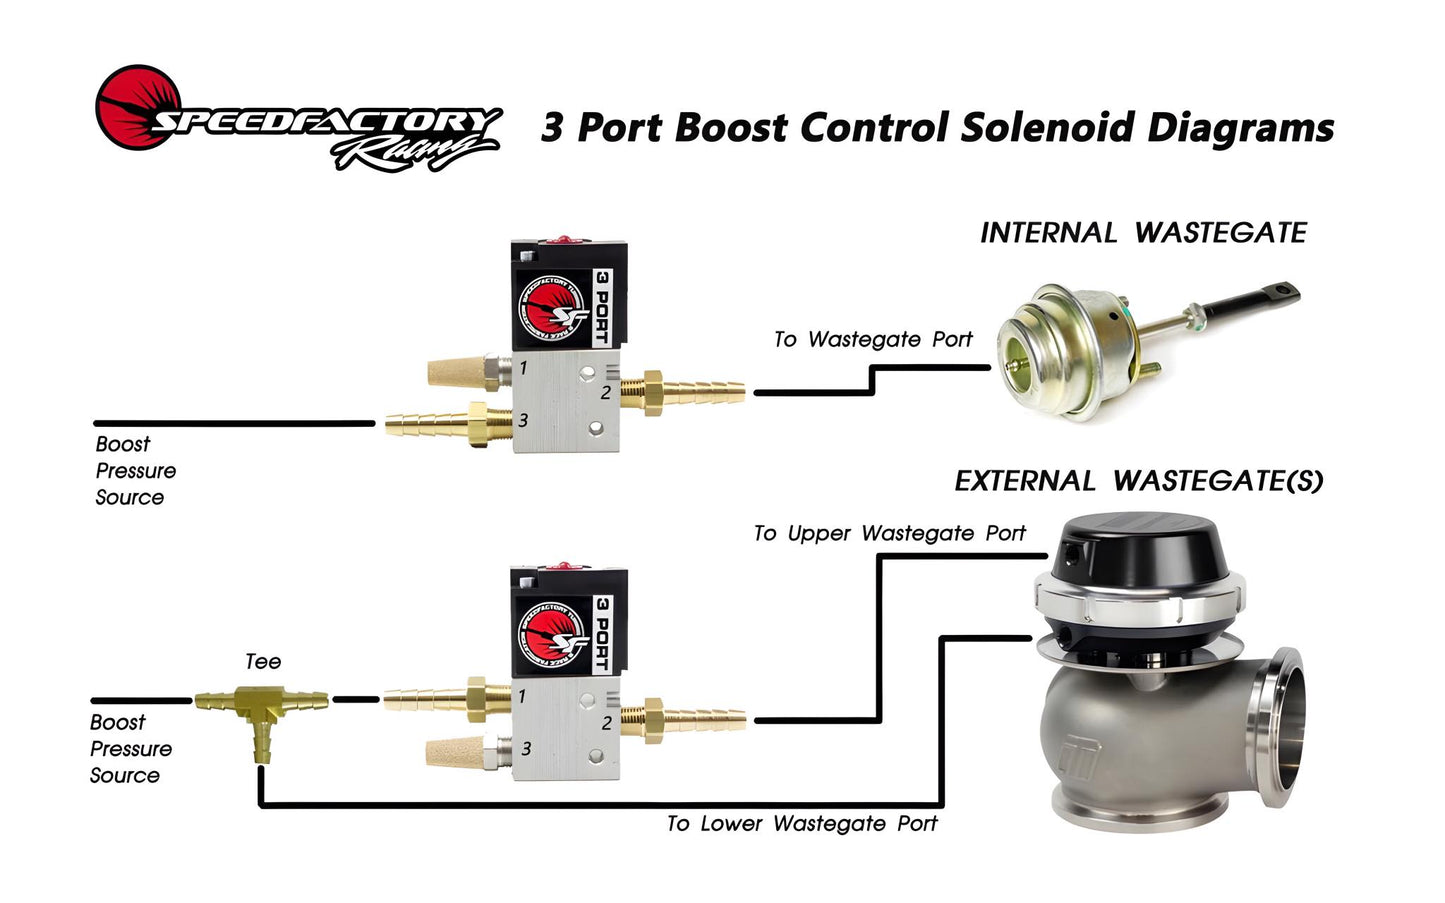 SpeedFactory Port Boost Control Solenoid Kit